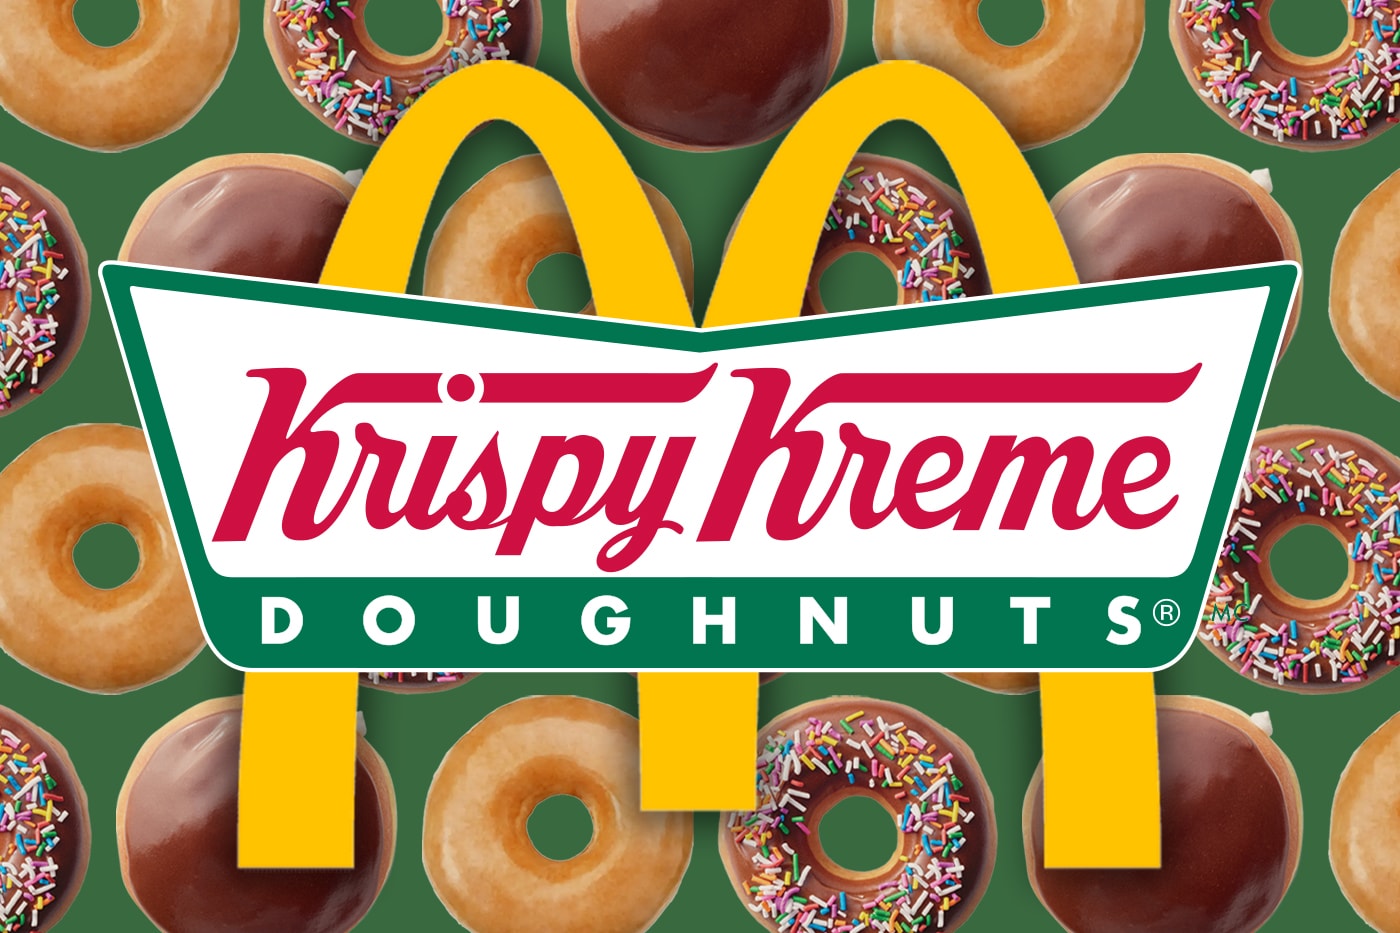 米マクドナルドが全店舗でクリスピー・クリーム・ドーナツの提供を開始 McDonald's To Sell Krispy Kreme Doughnuts Nationwide by the End of 2026 partnerships treats sweets original glazed doughnut chocalte iced sprinkles doughnut chocolate iced kreme filled doughnu